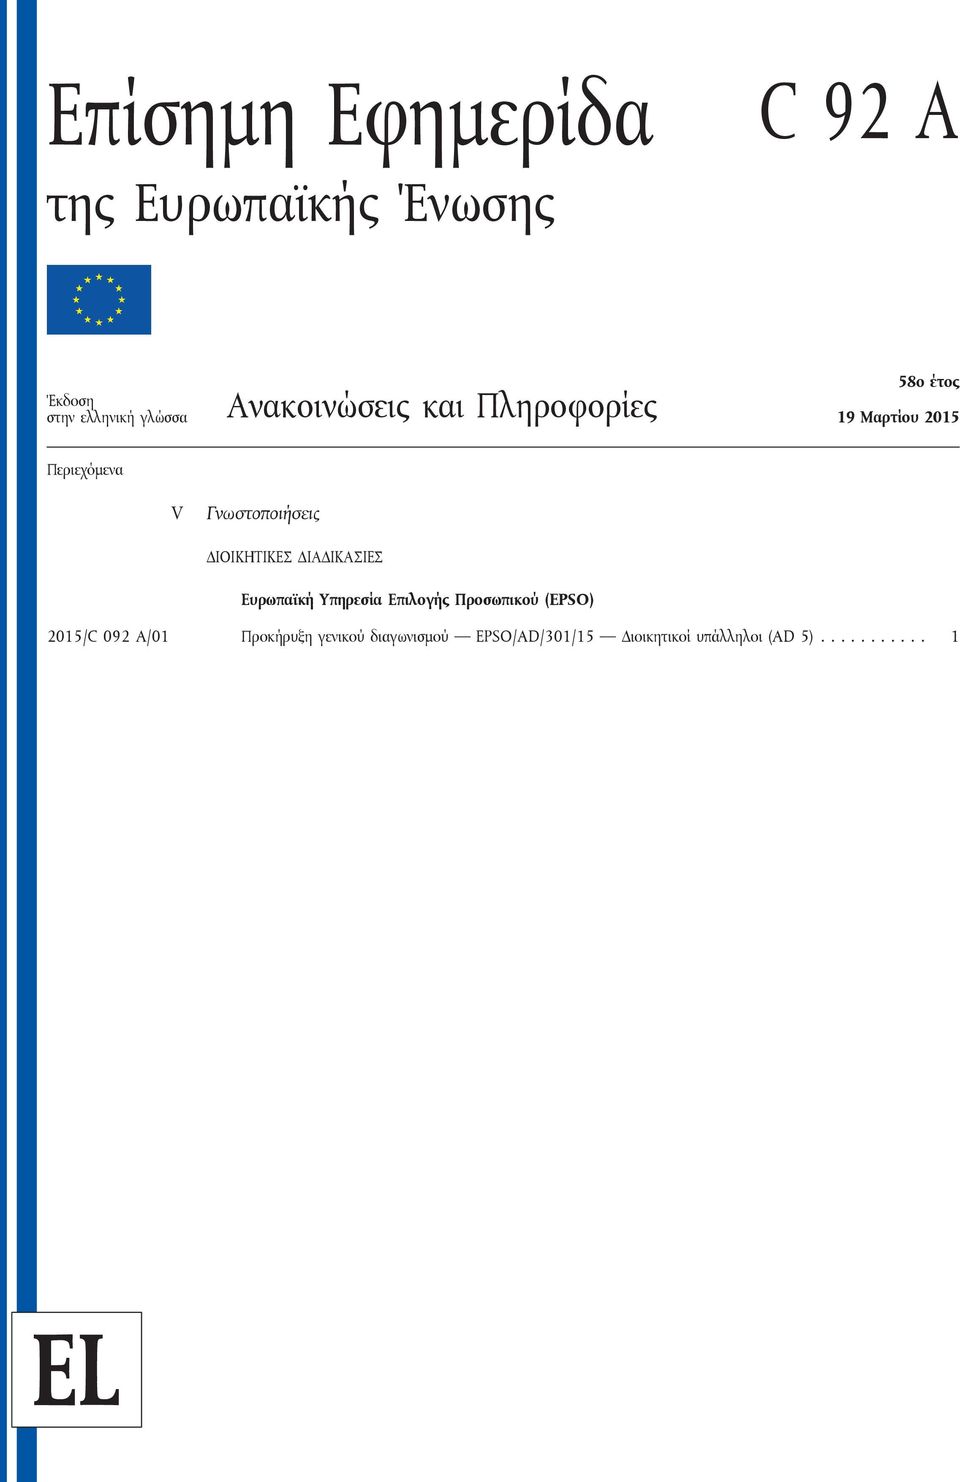 ΔΙΟΙΚΗΤΙΚΕΣ ΔΙΑΔΙΚΑΣΙΕΣ Ευρωπαϊκή Υπηρεσία Επιλογής Προσωπικού (EPSO) 2015/C 092